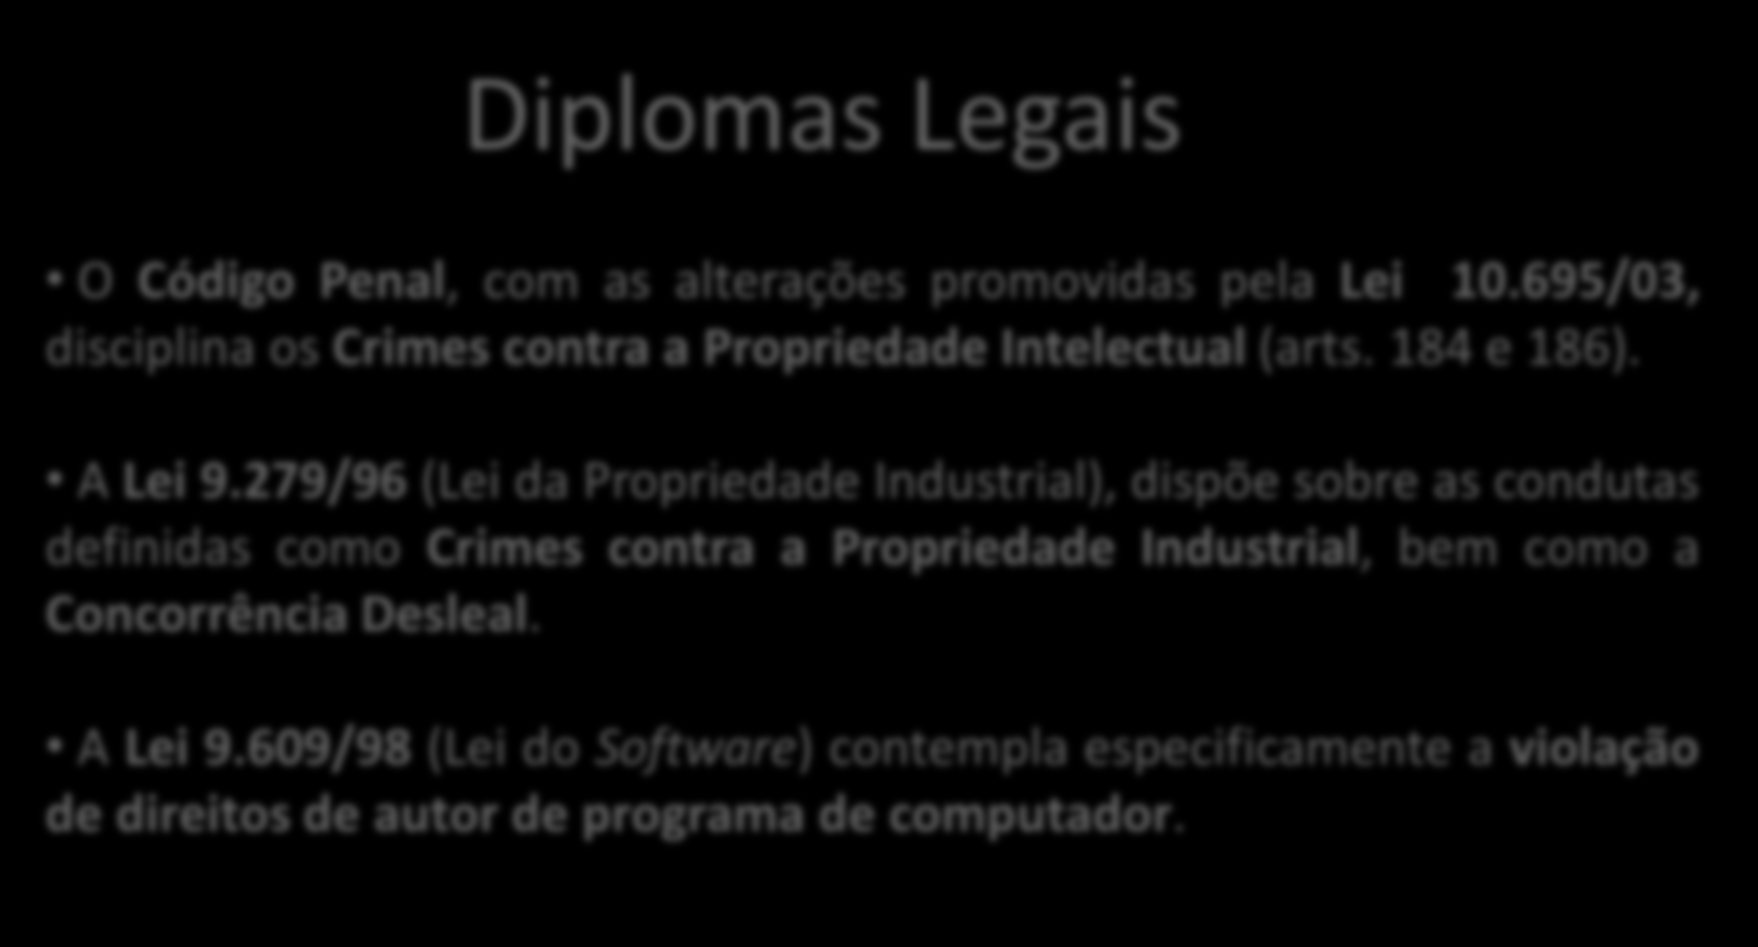 Diplomas Legais O Código Penal, com as alterações promovidas pela Lei 10.695/03, disciplina os Crimes contra a Propriedade Intelectual (arts. 184 e 186). A Lei 9.